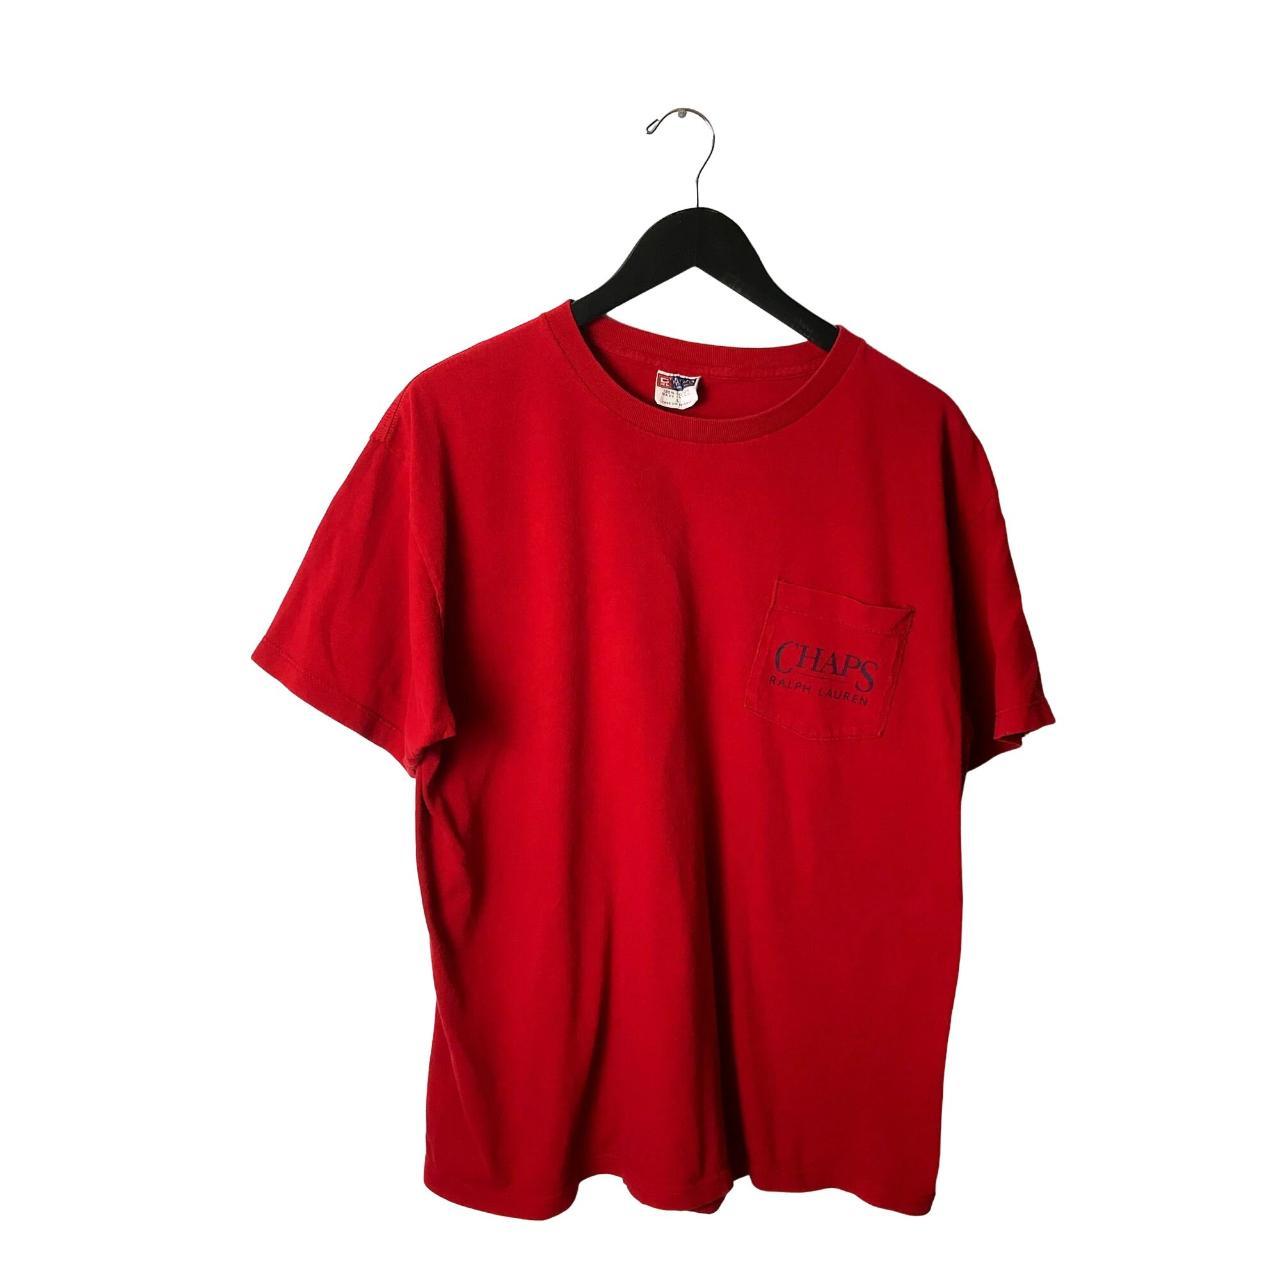 90s Vintage Chaps Ralph Lauren T Shirt Classic... - Depop